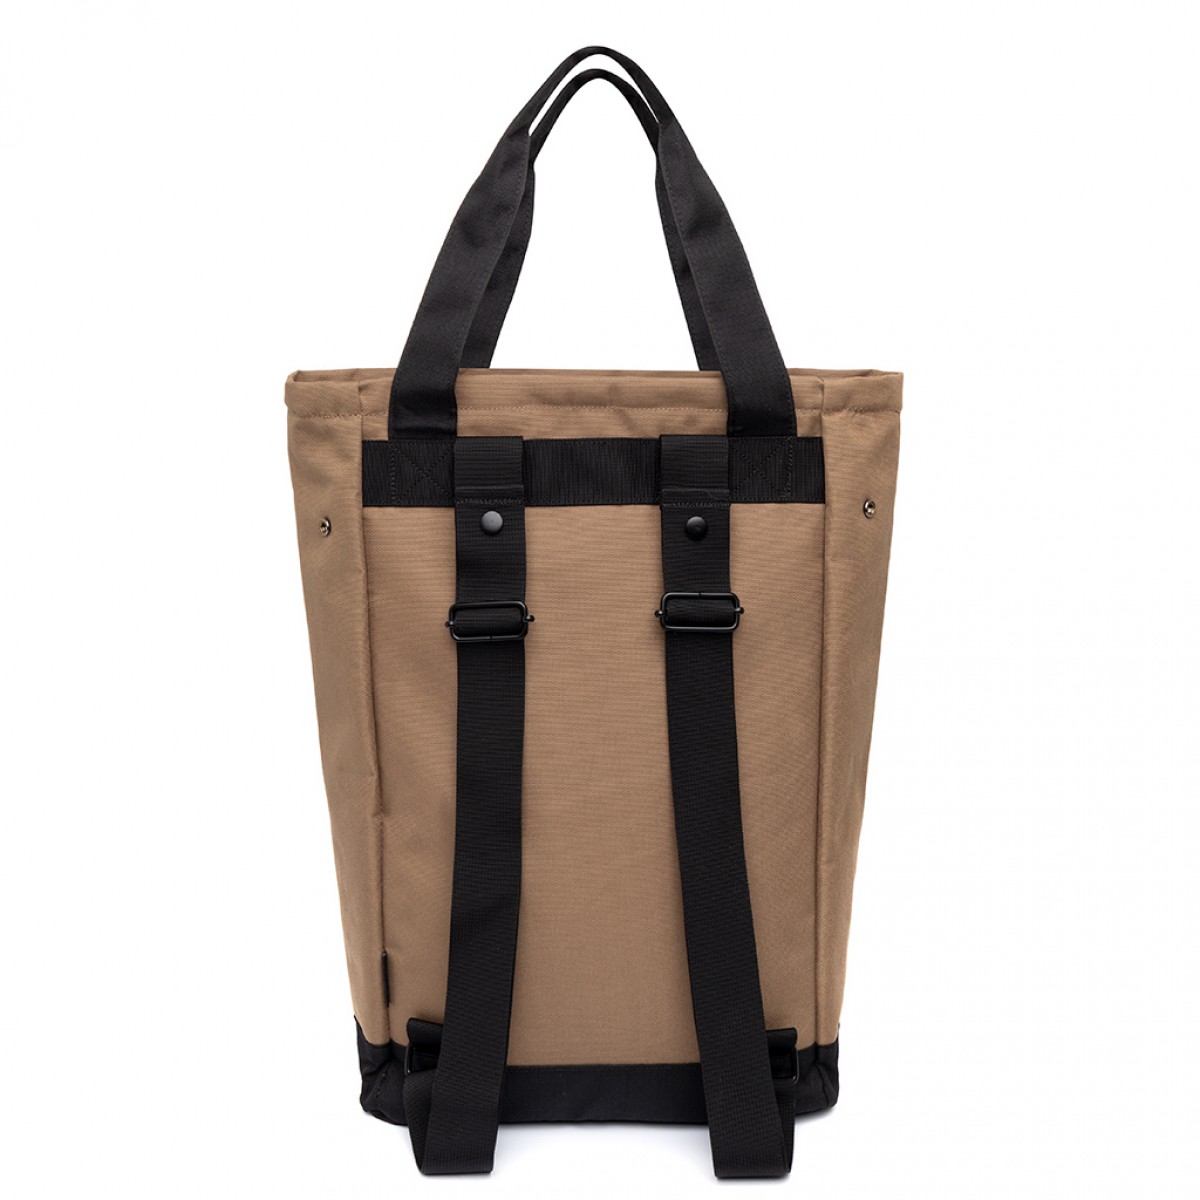 Lefrik - Roots Tote Bag Maxi - Camel - 40 x 43 x 14 cm / 17L